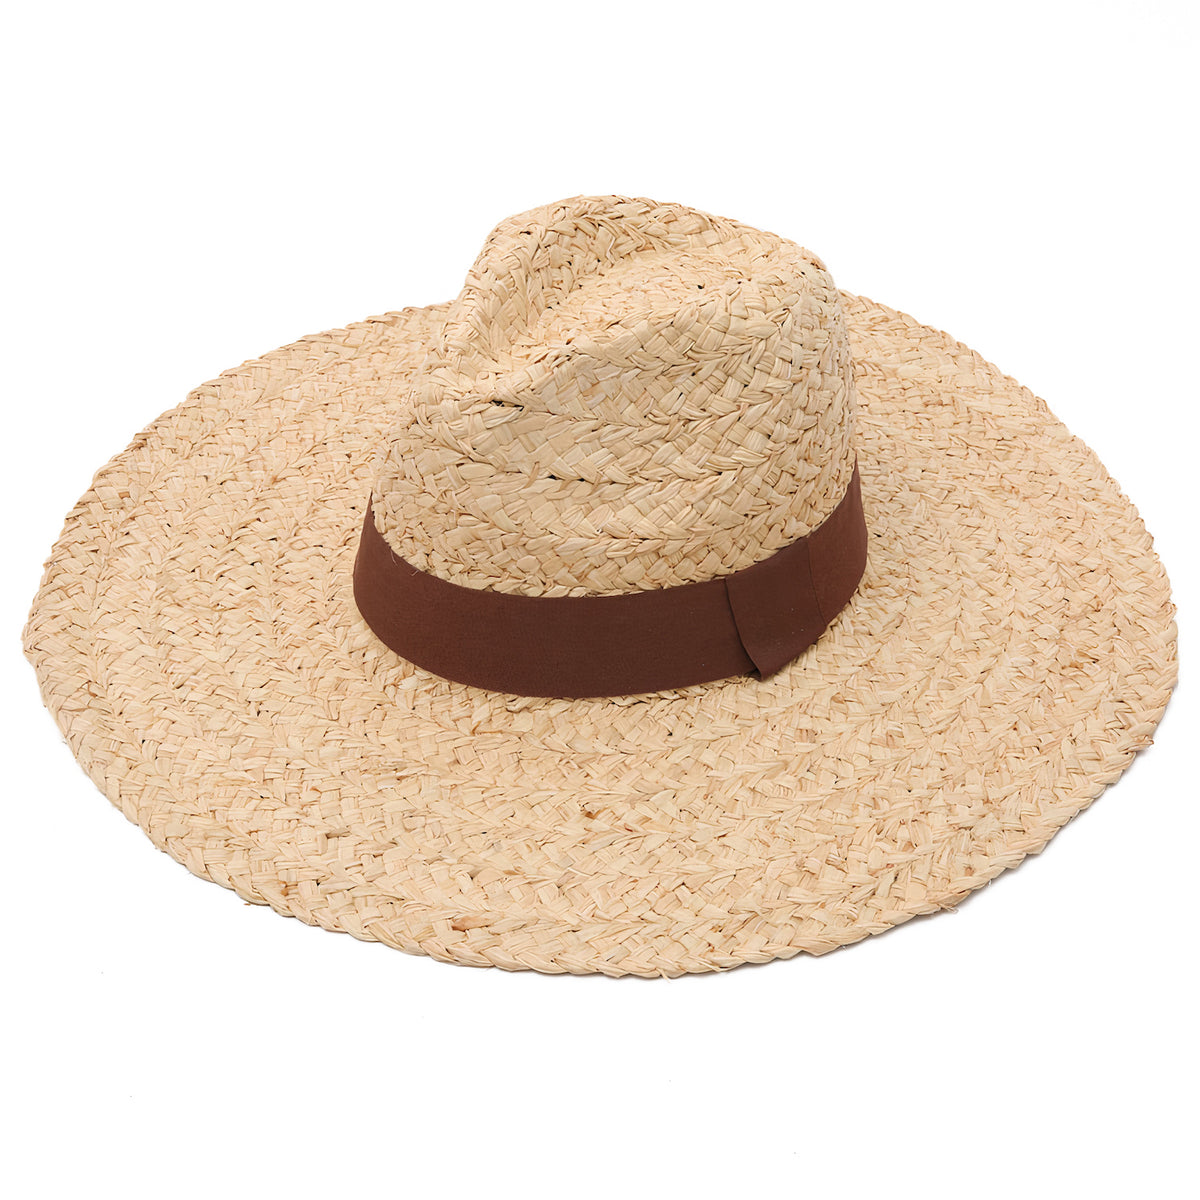 Femme Homme Chapeau De Paille Panama Chapeau Été Large Bord